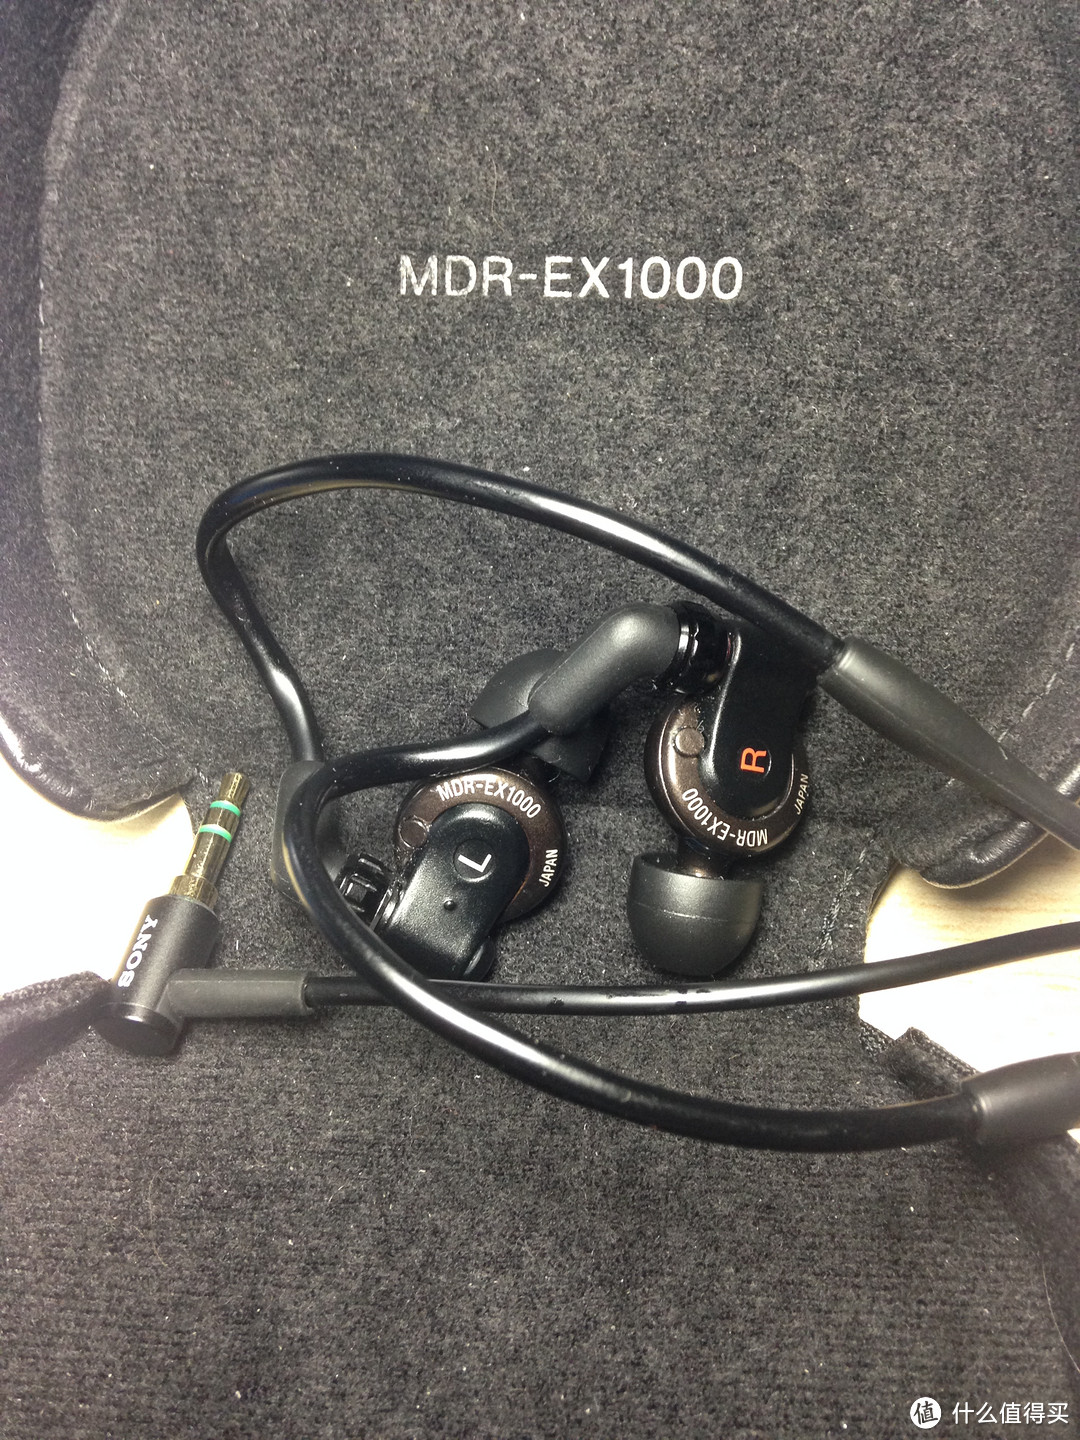 SONY 索尼 MDR-EX1000 入耳式旗舰动圈耳机，另外聊聊MDR-E931LP及天龙C710